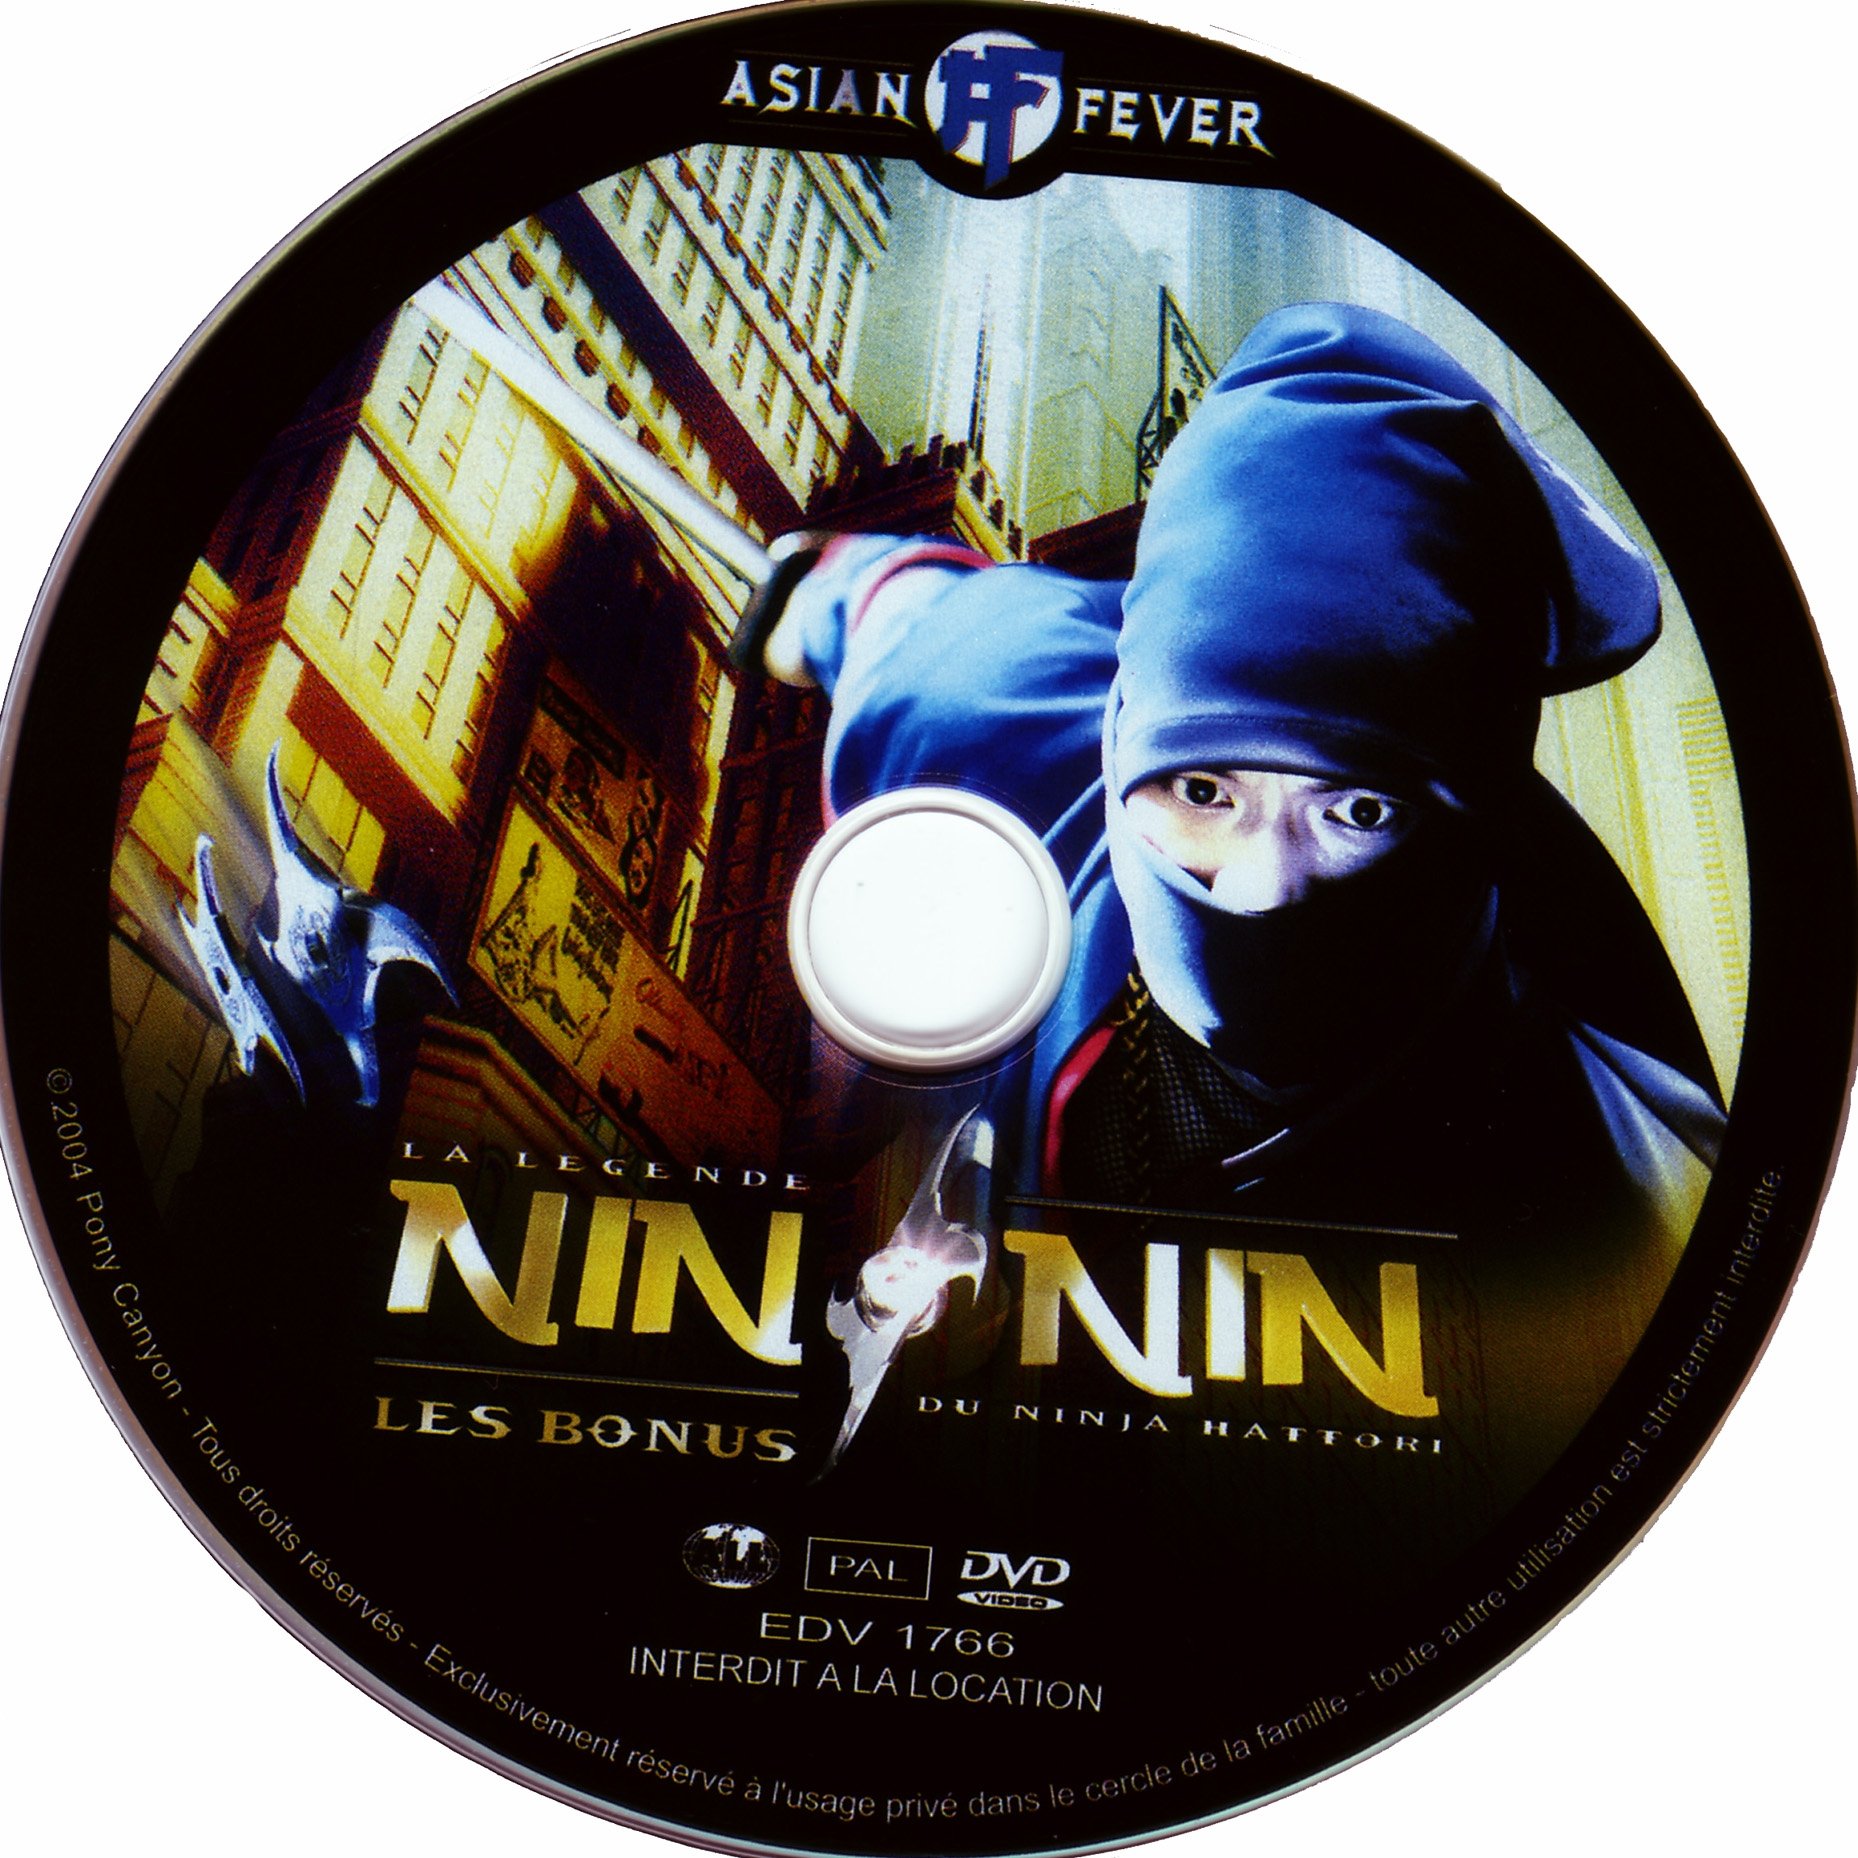 La legende du ninja Hattori BONUS